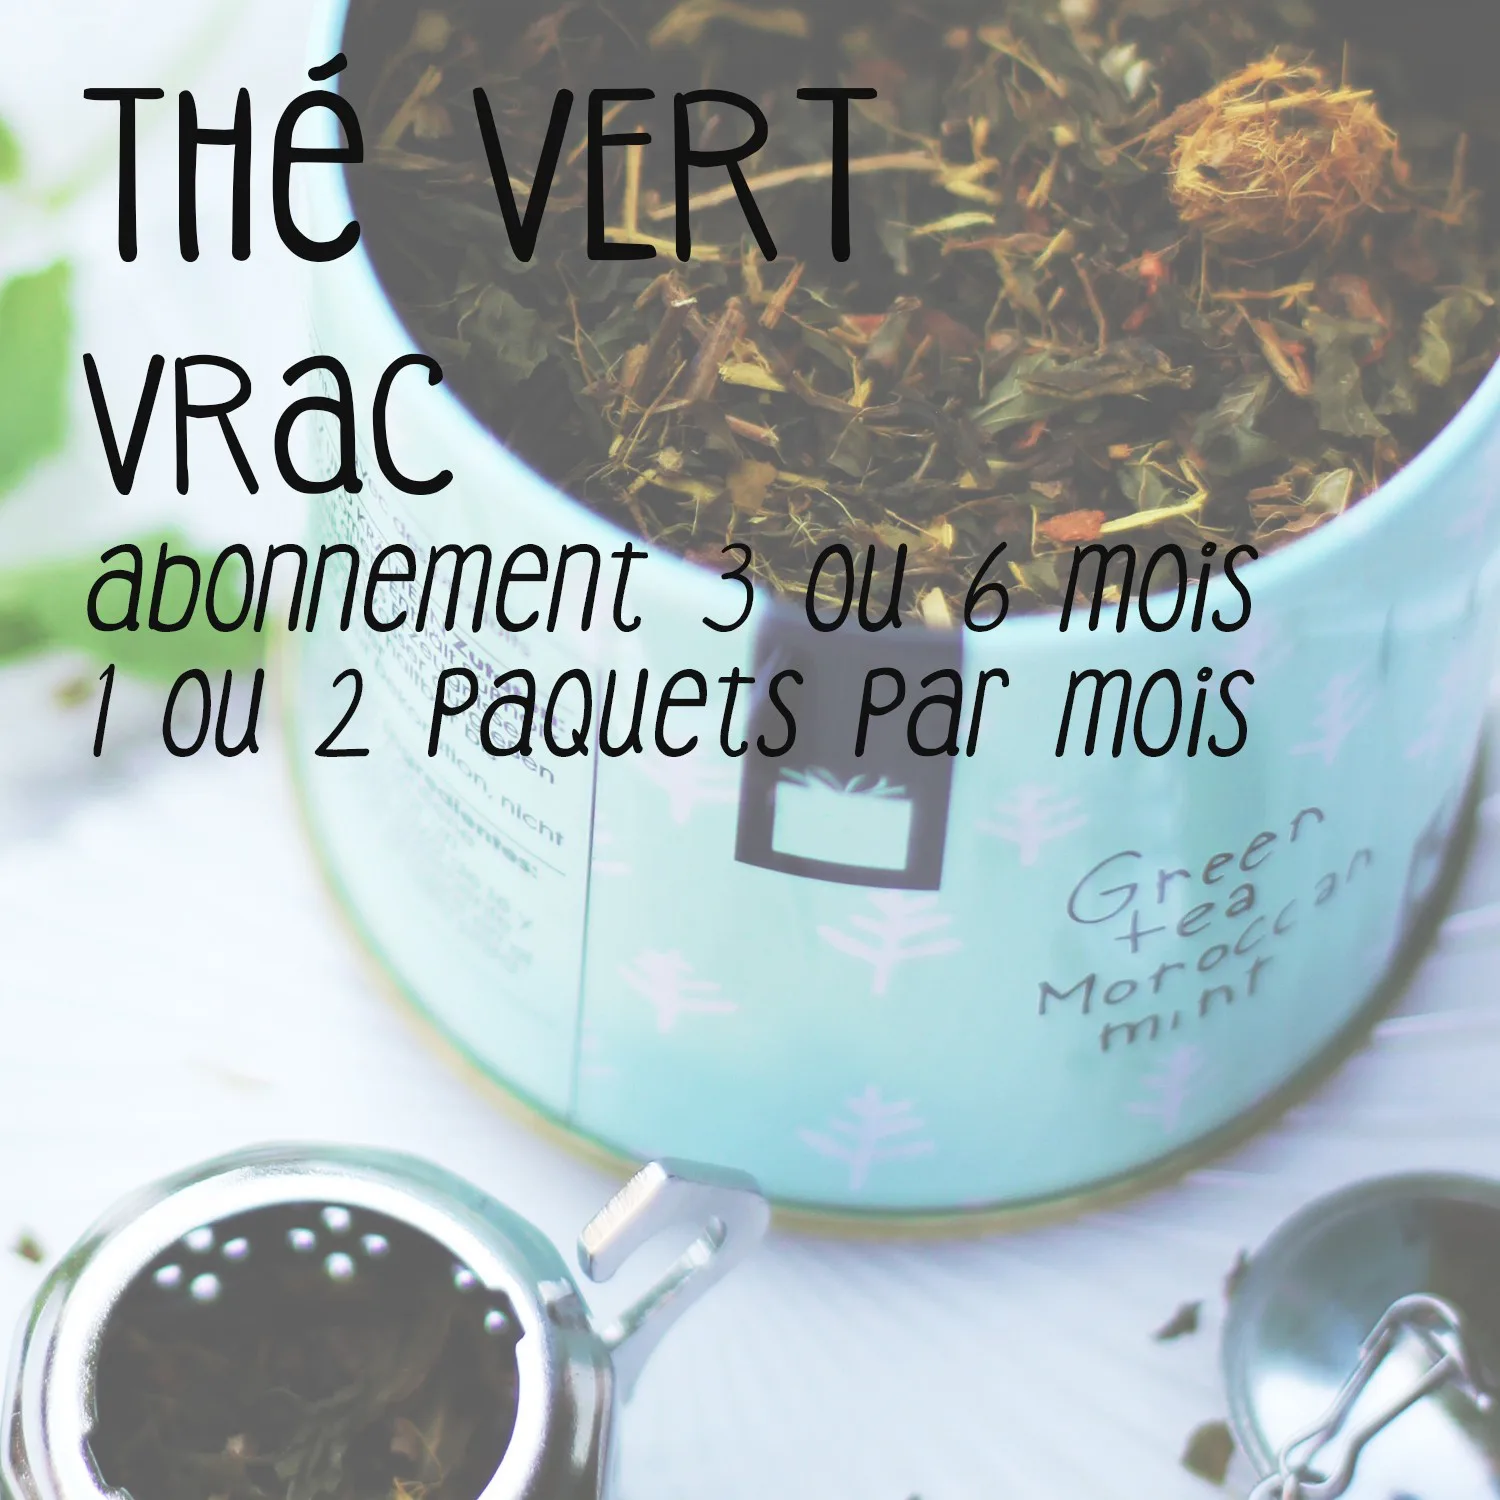 Abonnement thé vert 1 : Thé vert vrac 3/6 mois - Cafés Querry